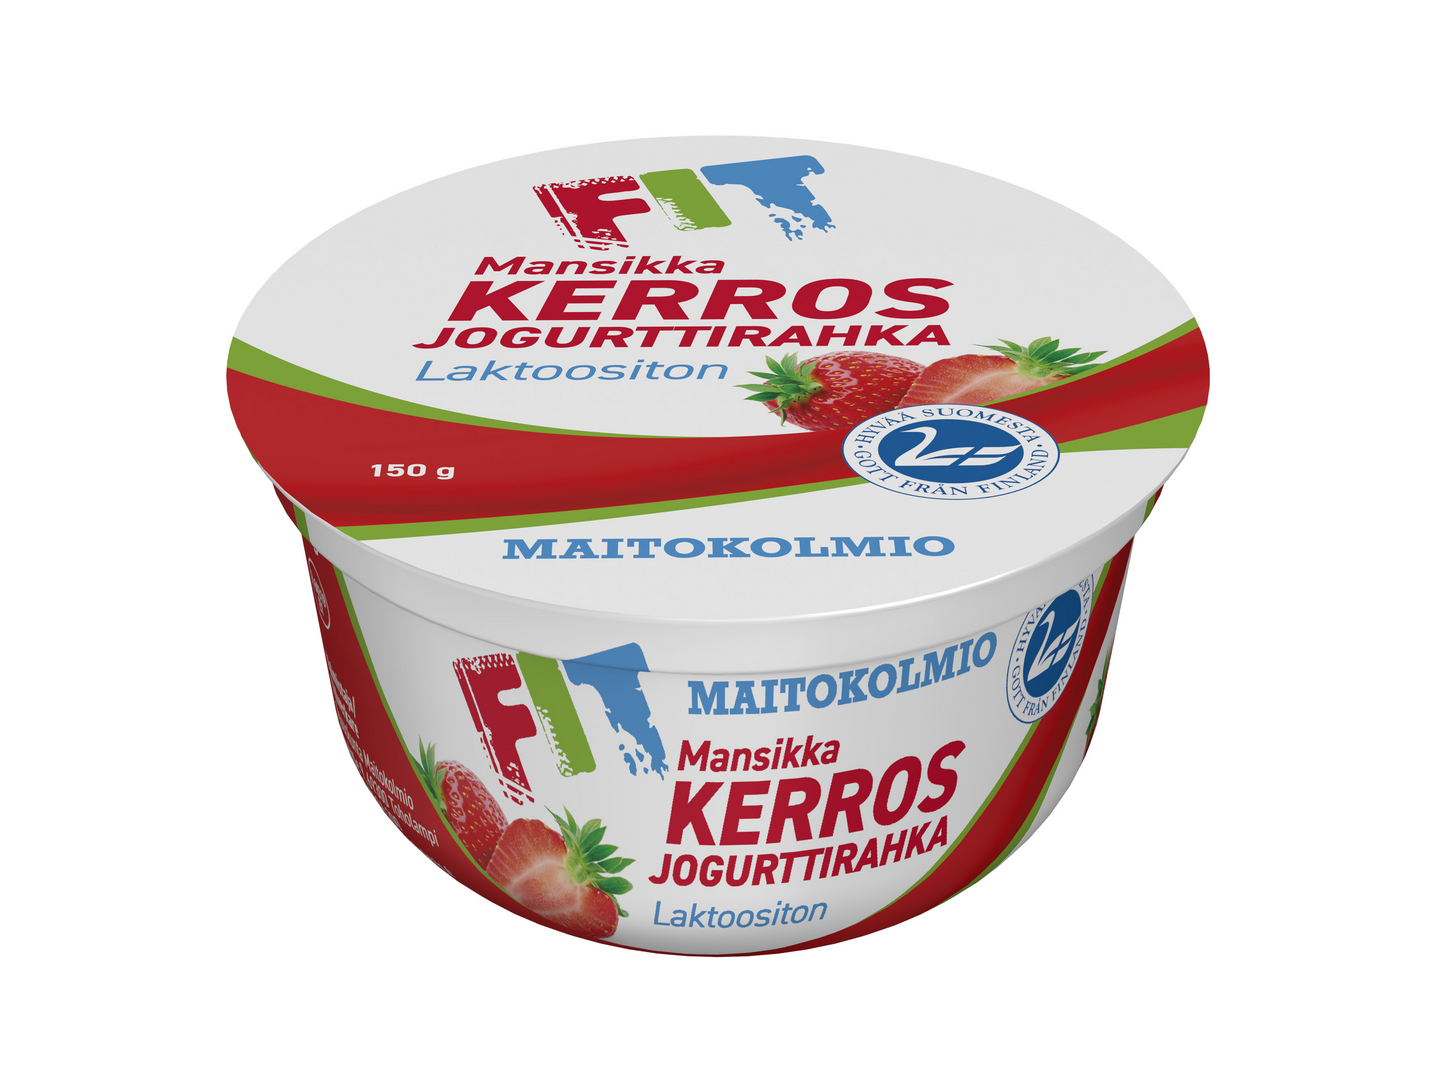 Maitokolmio FIT kerrosjogurttirahka 150g mansikka laktoositon